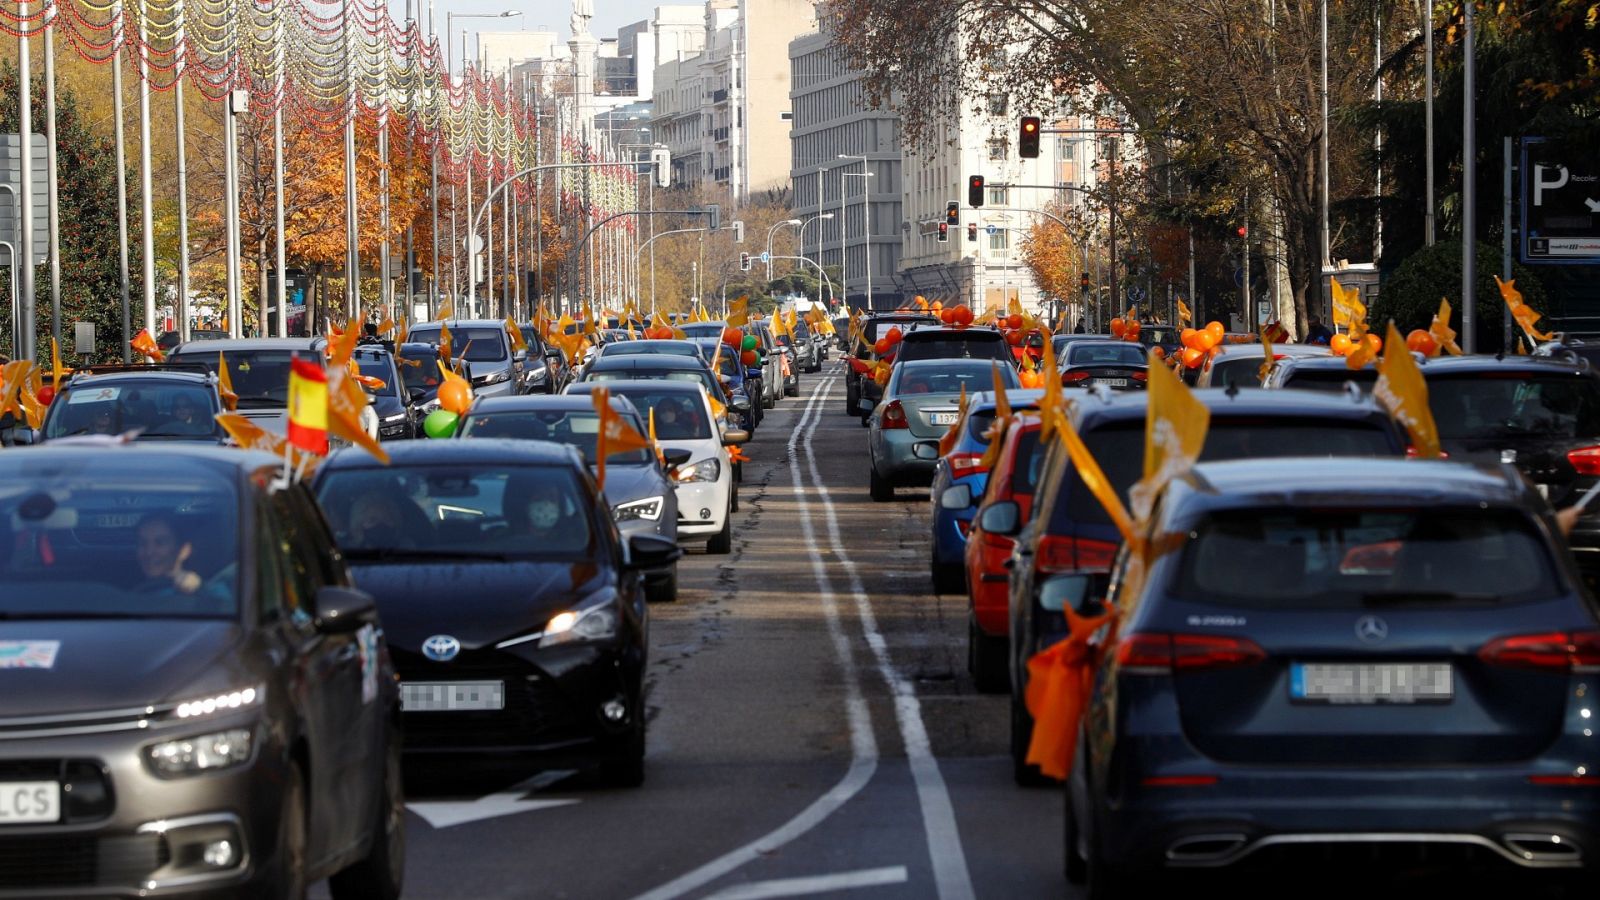 La educación concertada vuelve a llenar las calles de coches para protestar contra la 'ley Celaá'